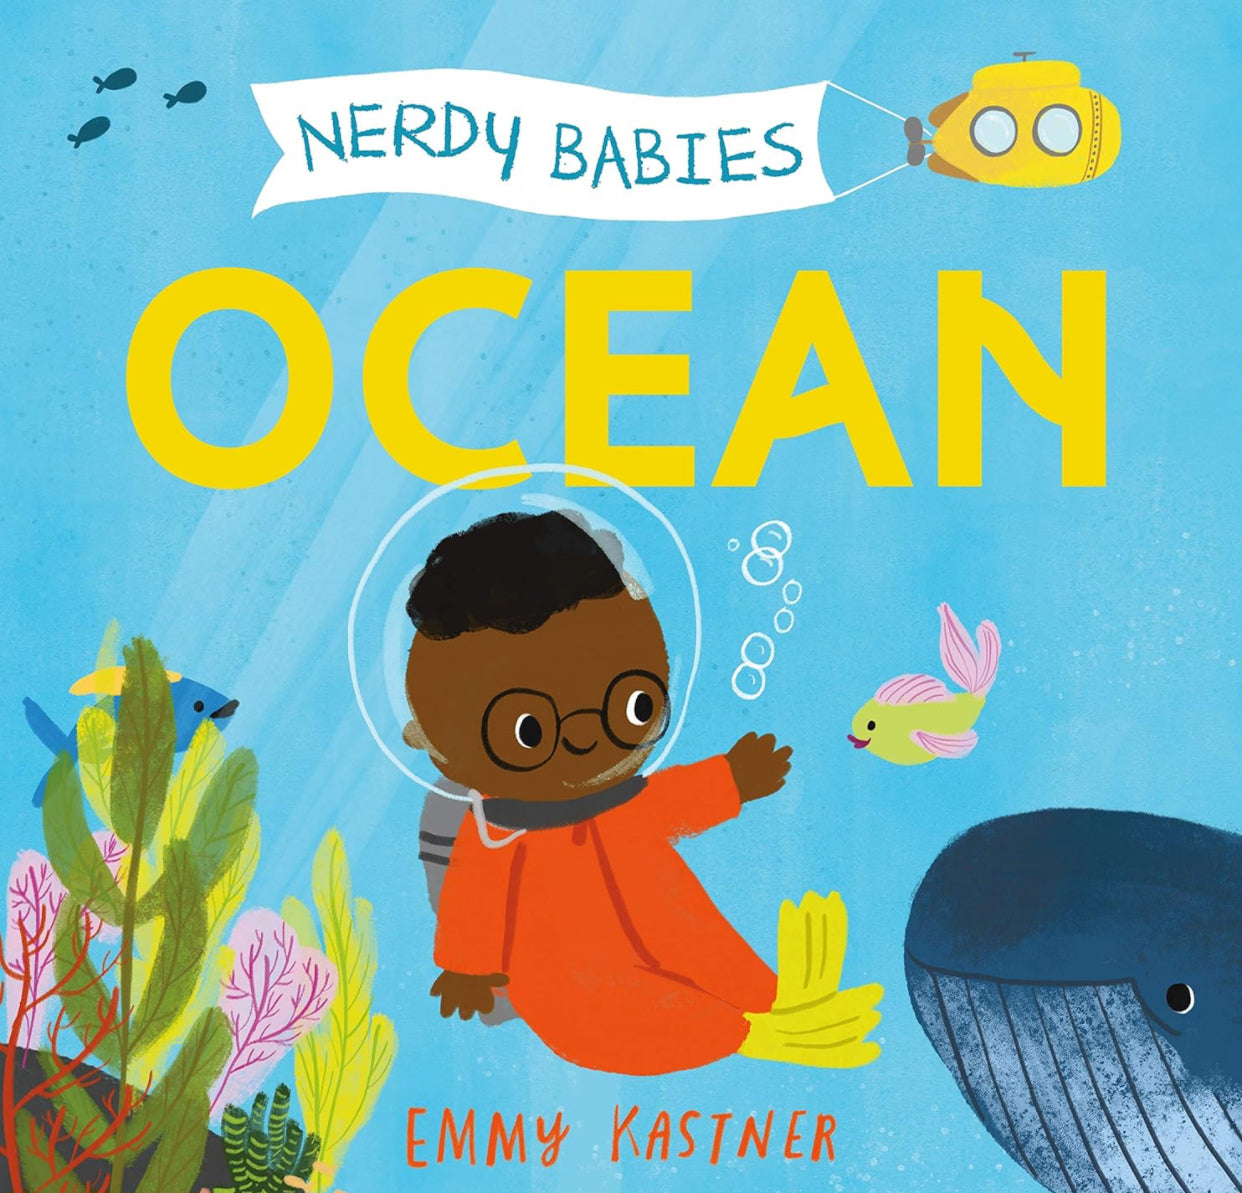 Nerdy Babies: Ocean (Nerdy Babies, 1)